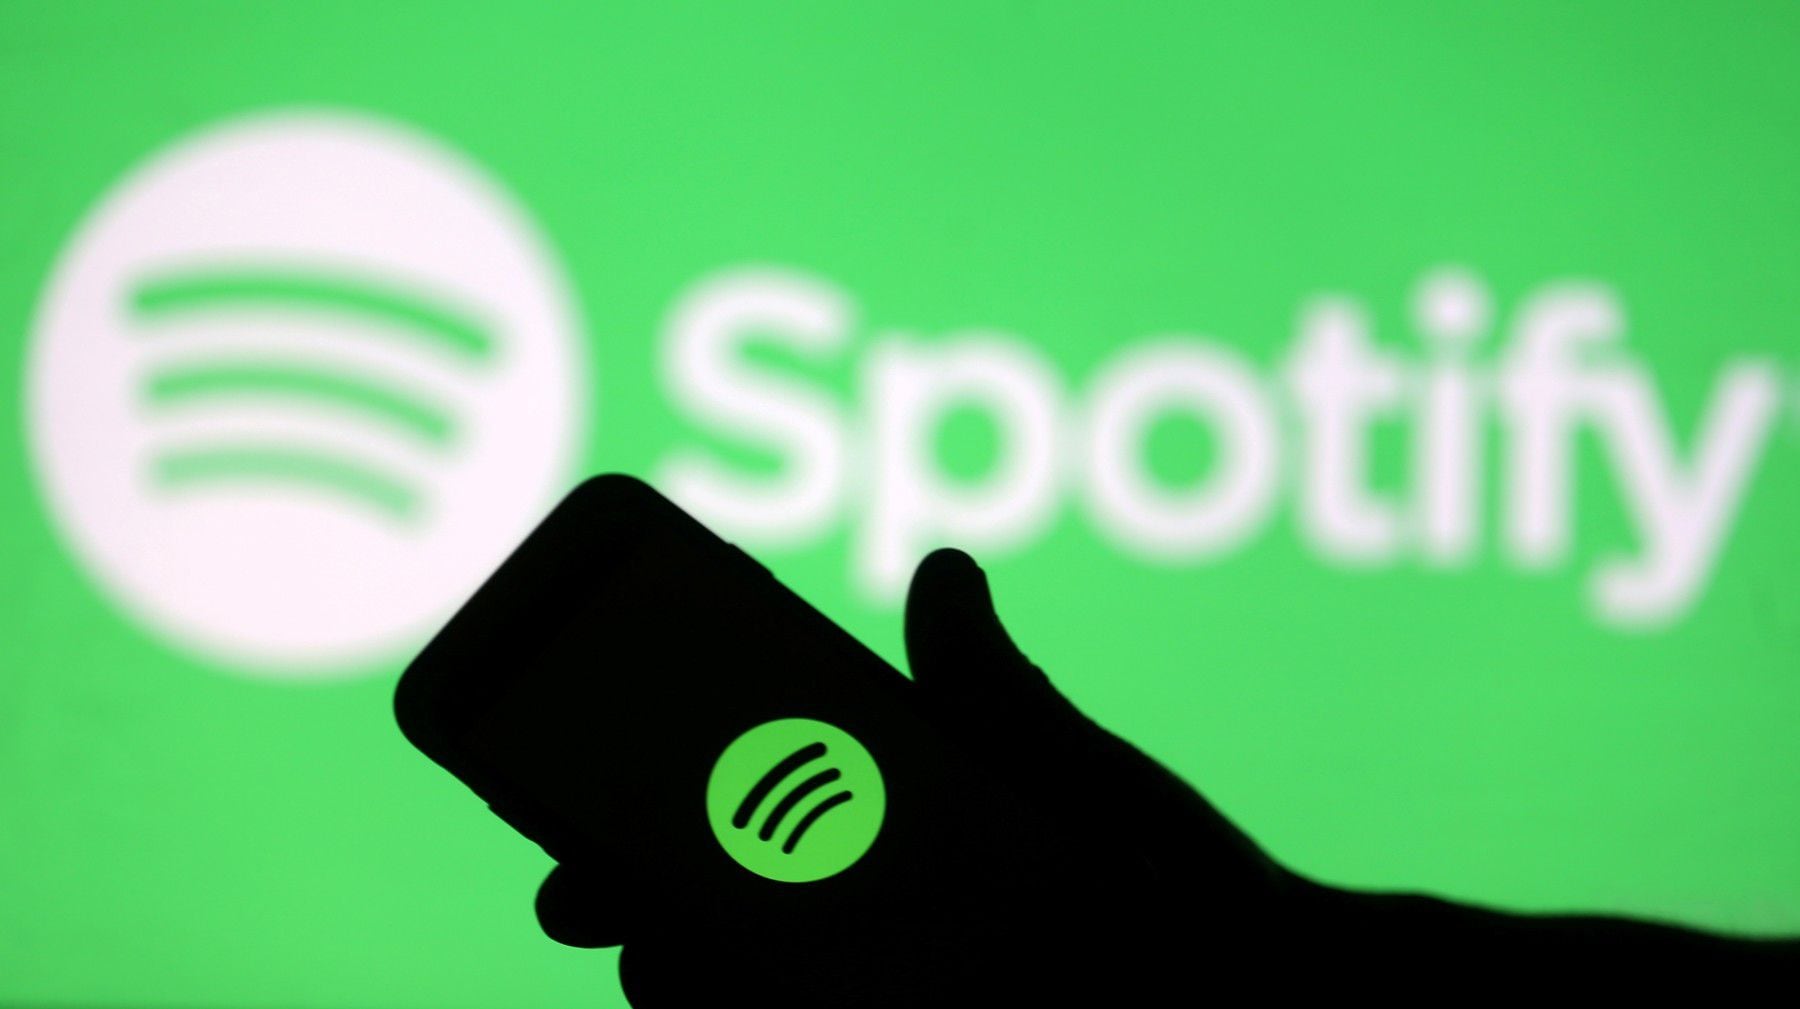 Spotify prueba notificaciones de emergencia en Suecia, alertando sobre accidentes y eventos graves en colaboración con la MSB.